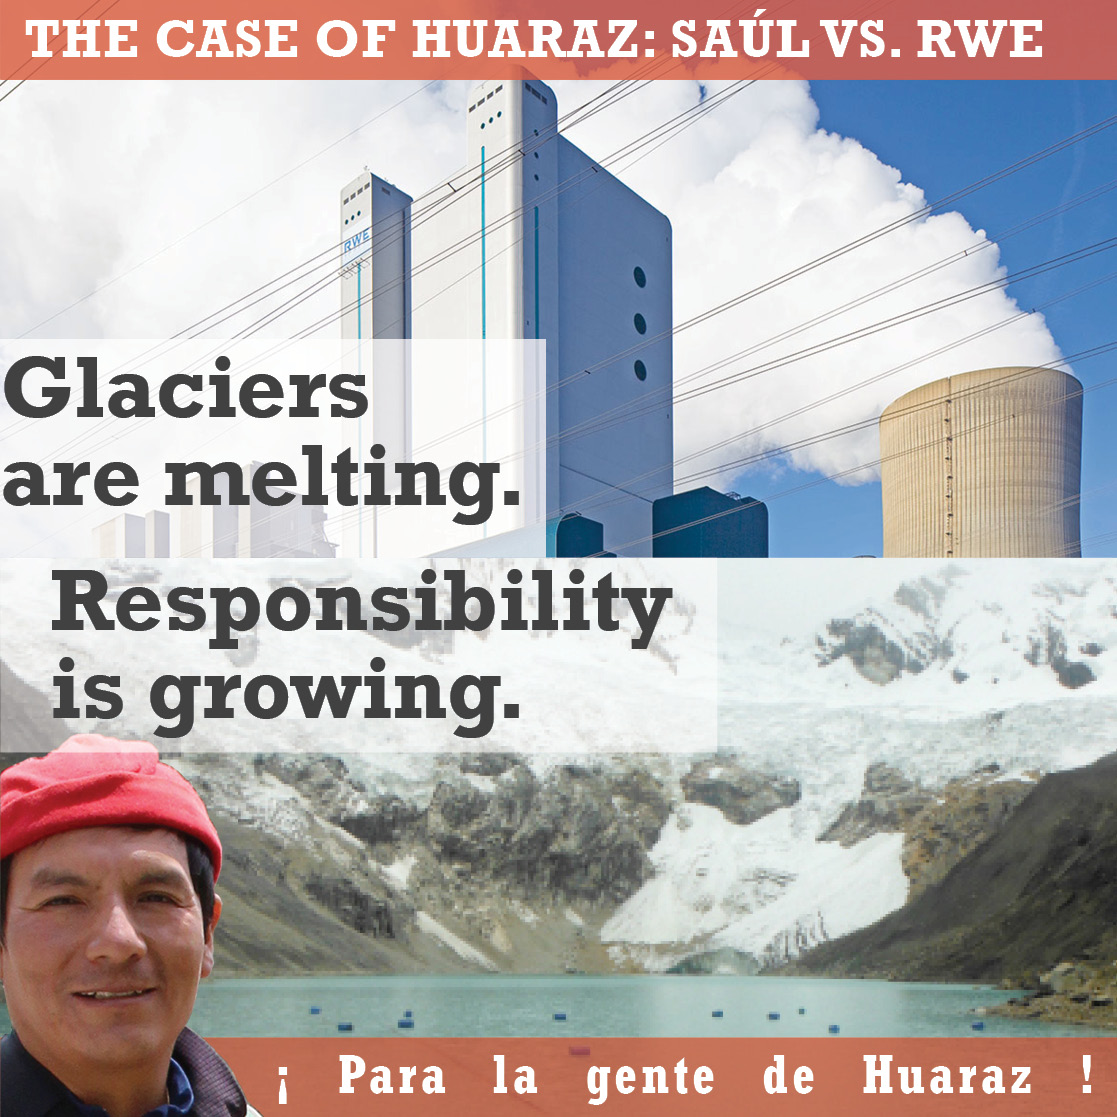 The Case of Huaraz